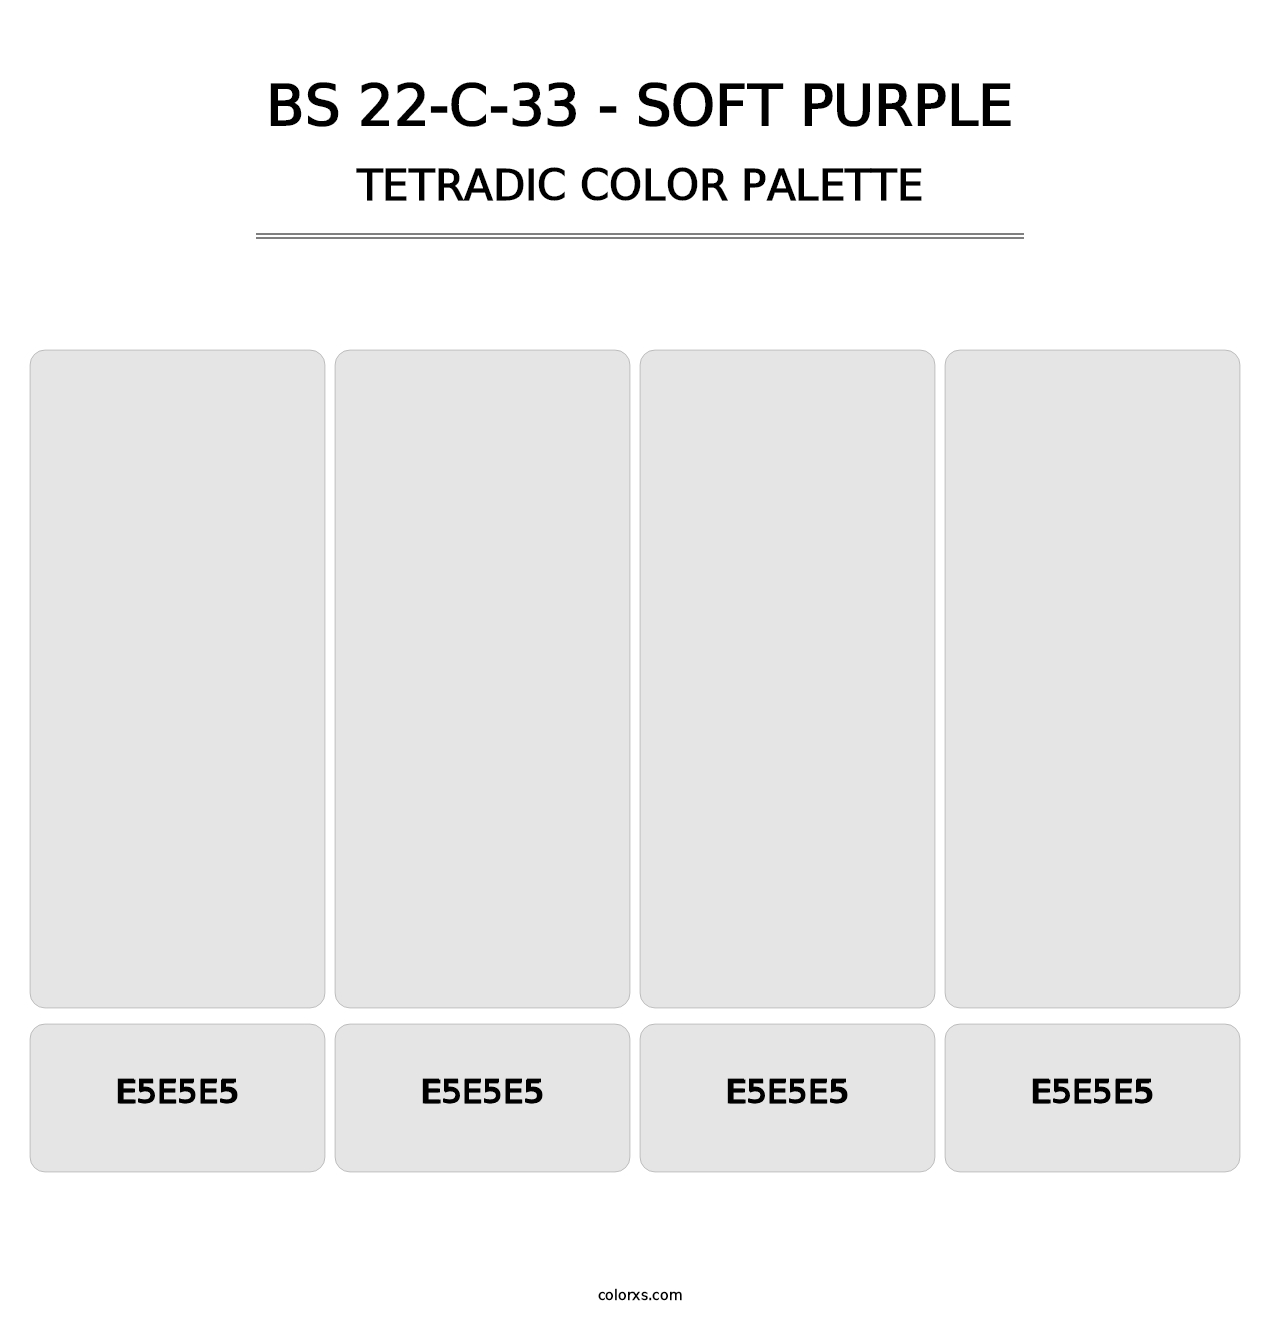 BS 22-C-33 - Soft Purple - Tetradic Color Palette